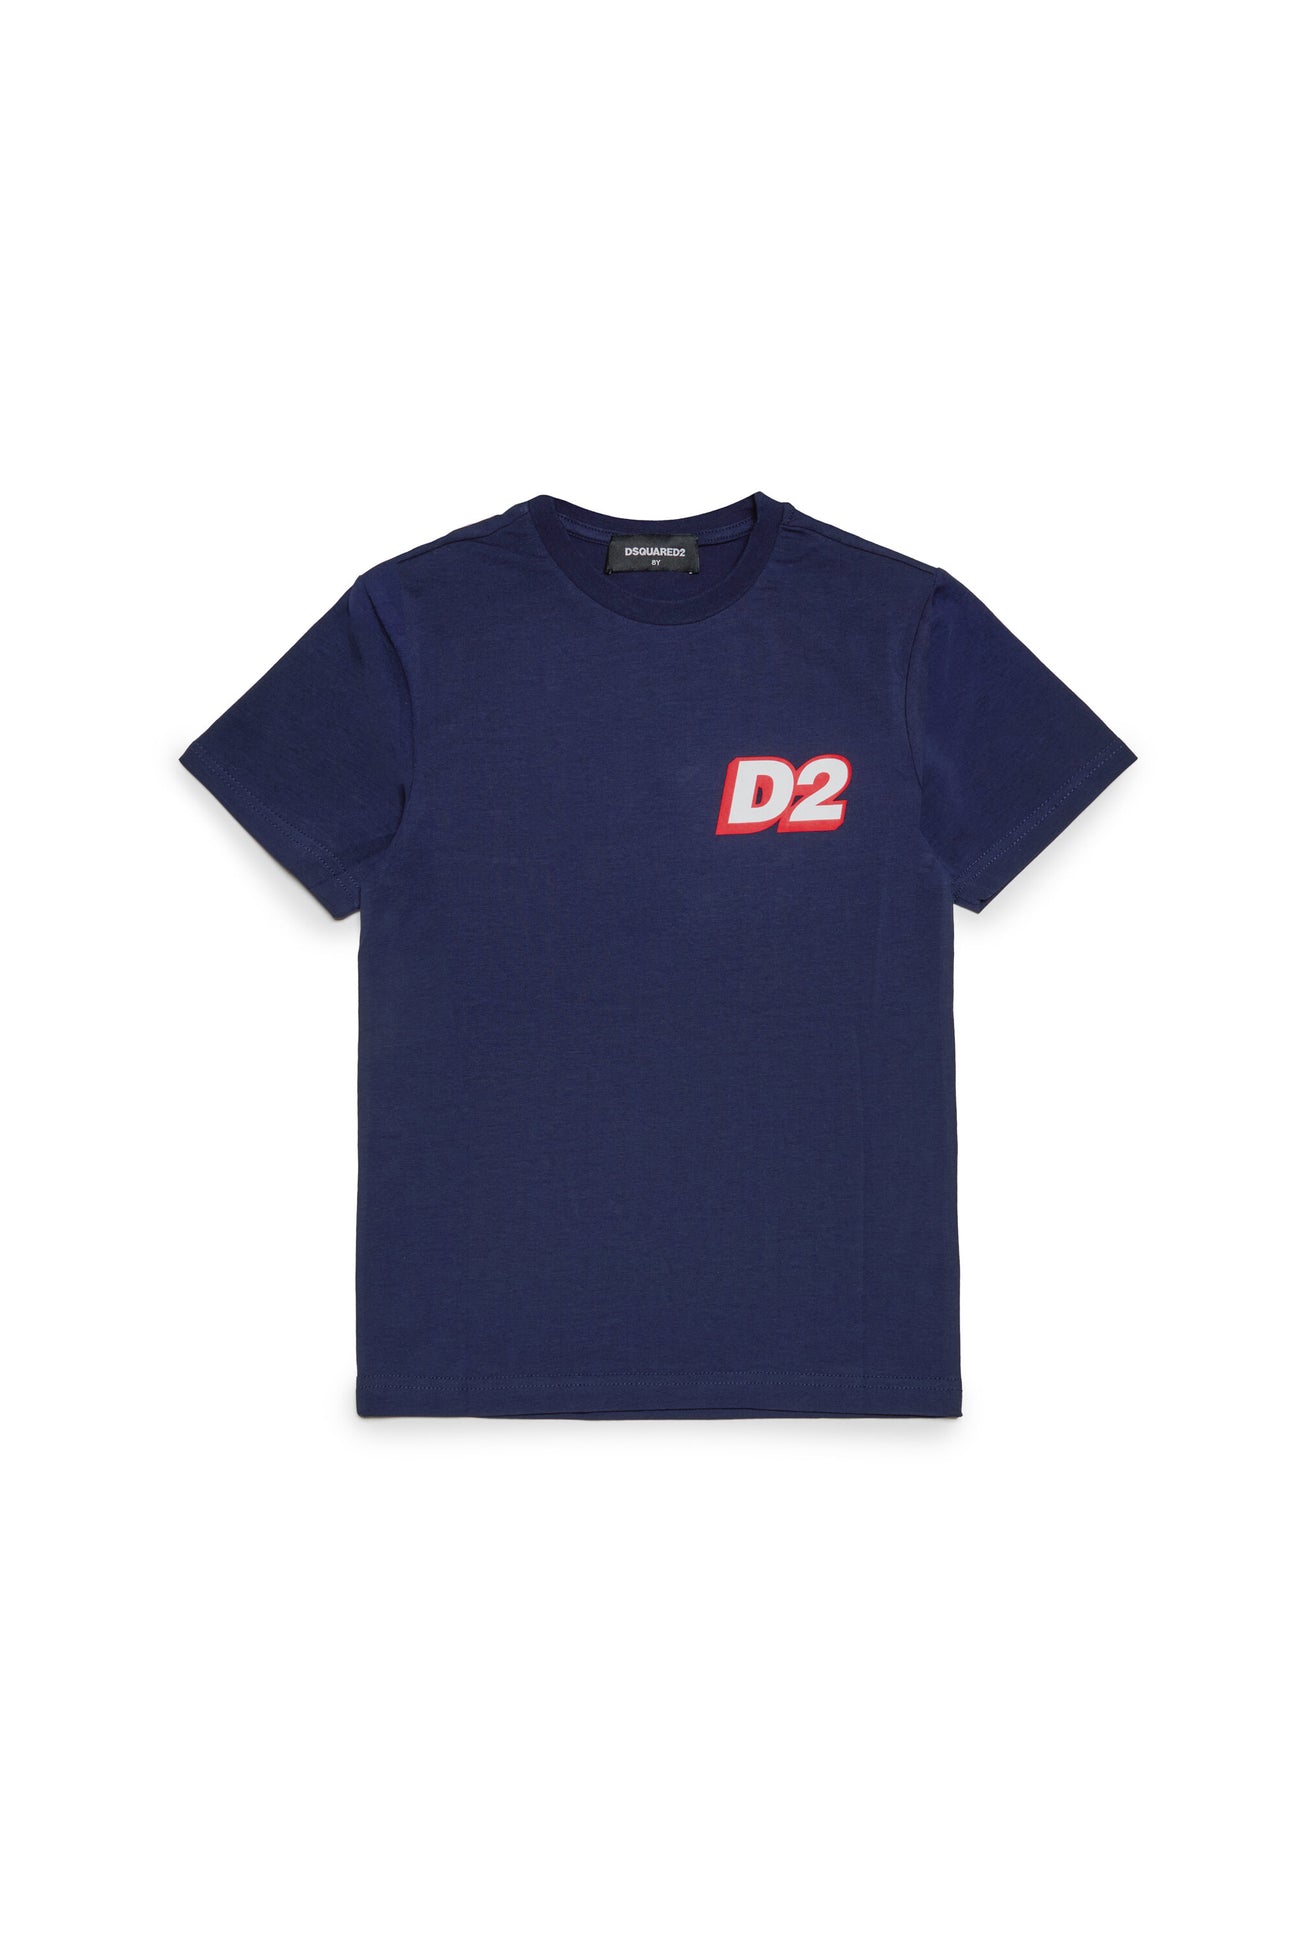 Jersey loungewear t-shirt with D2 logo 